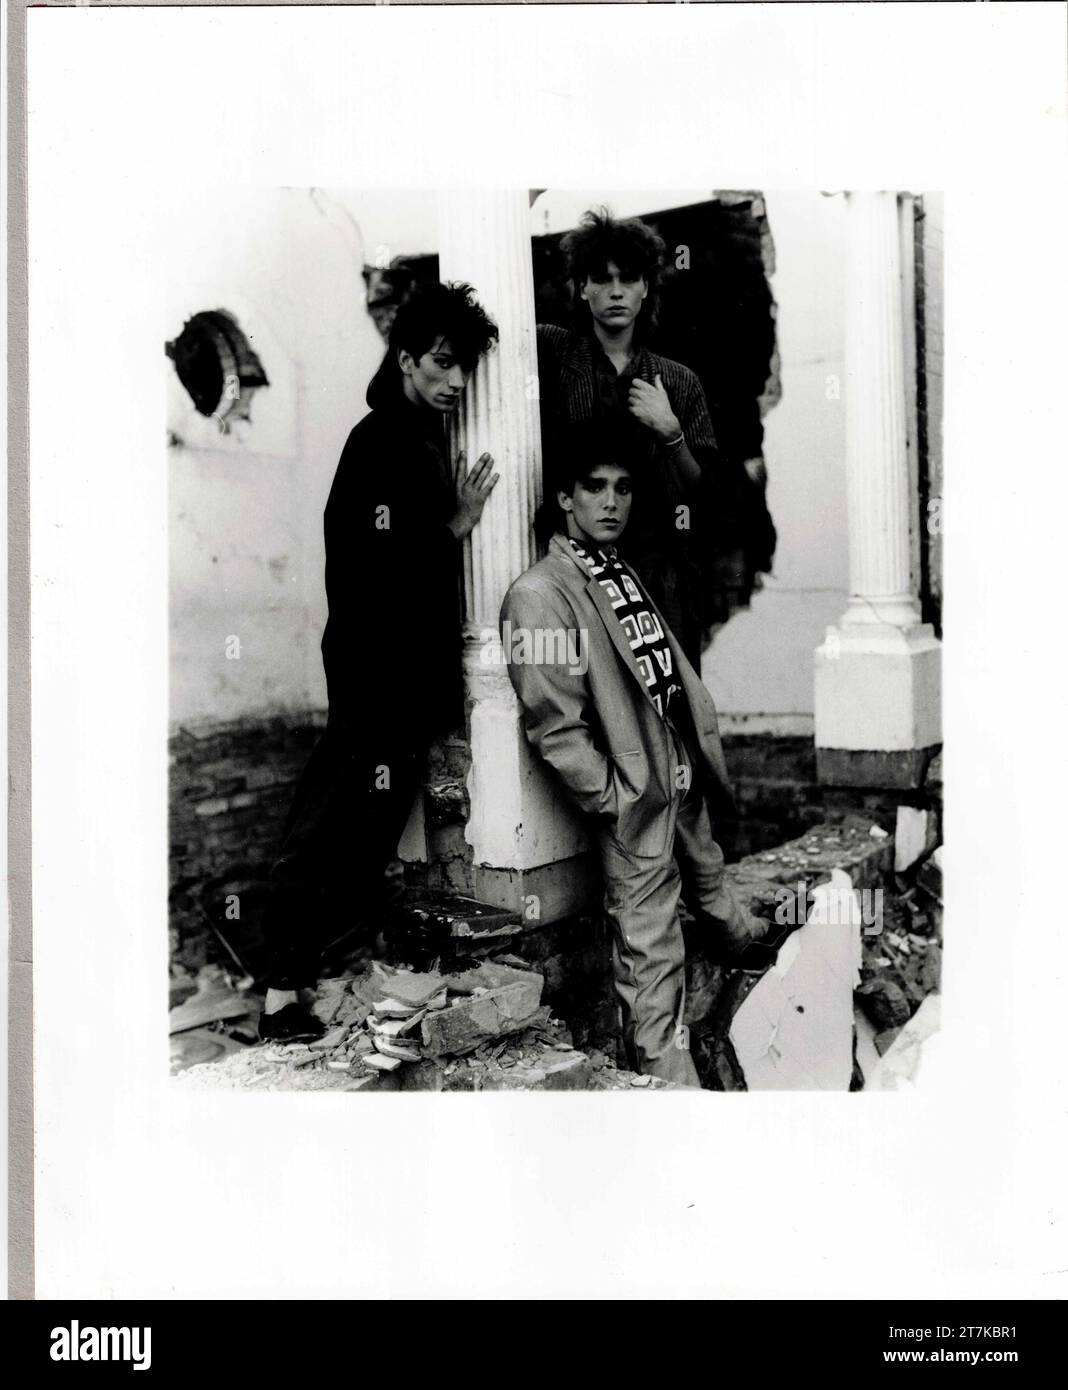 Neue Romantische Rockband Askari, Johannesburg, Südafrika, 1986. Aus der Sammlung - südafrikanische Musiker 1980er - Don Minnaar fotografisches Archiv Stockfoto